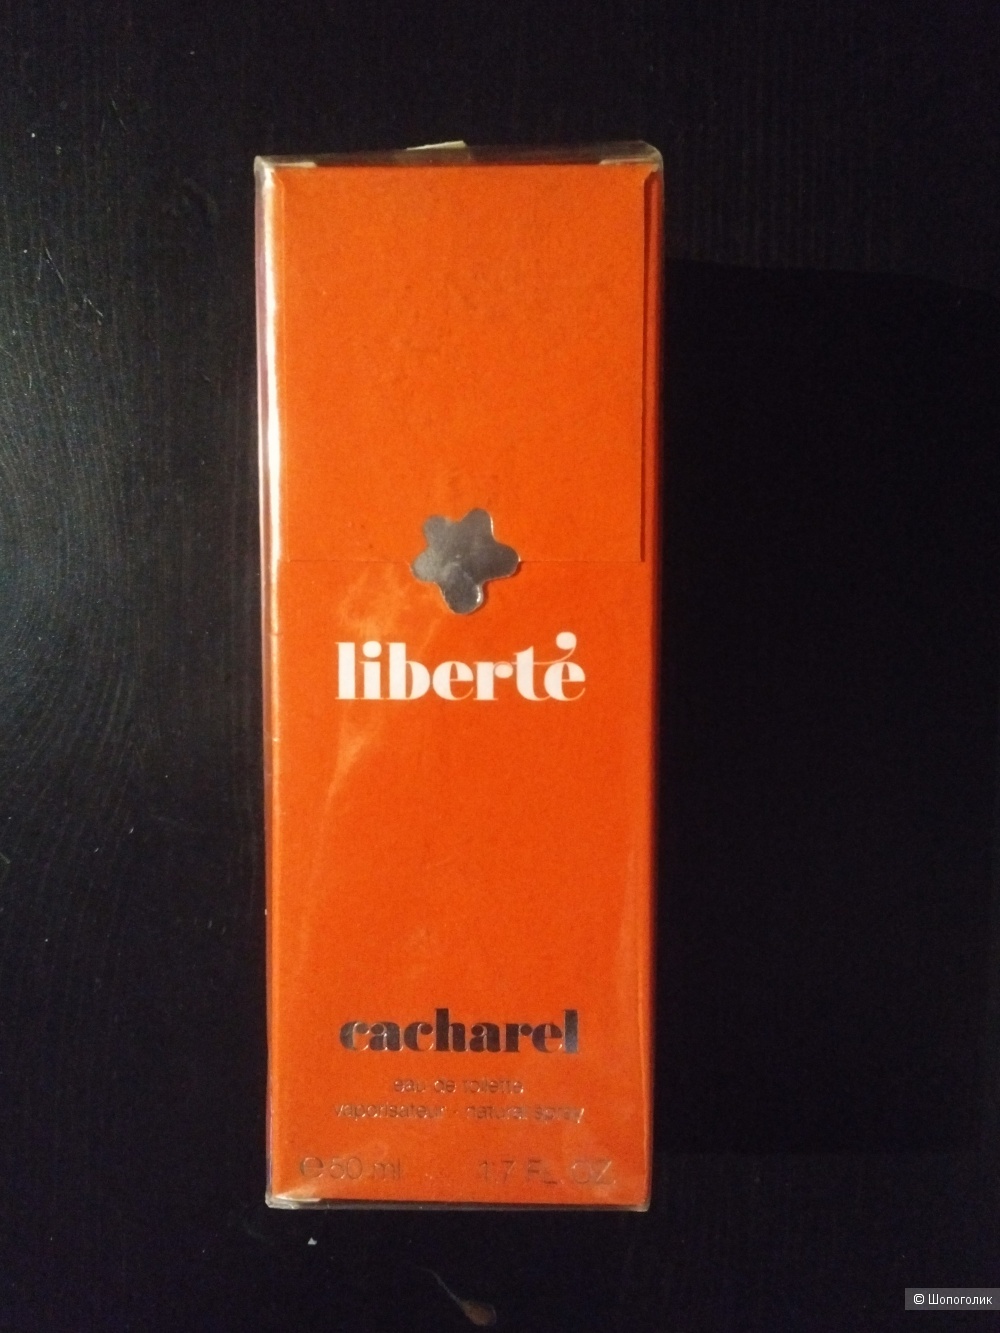 Туалетная вода Liberte бренда Cacharel,50 ml